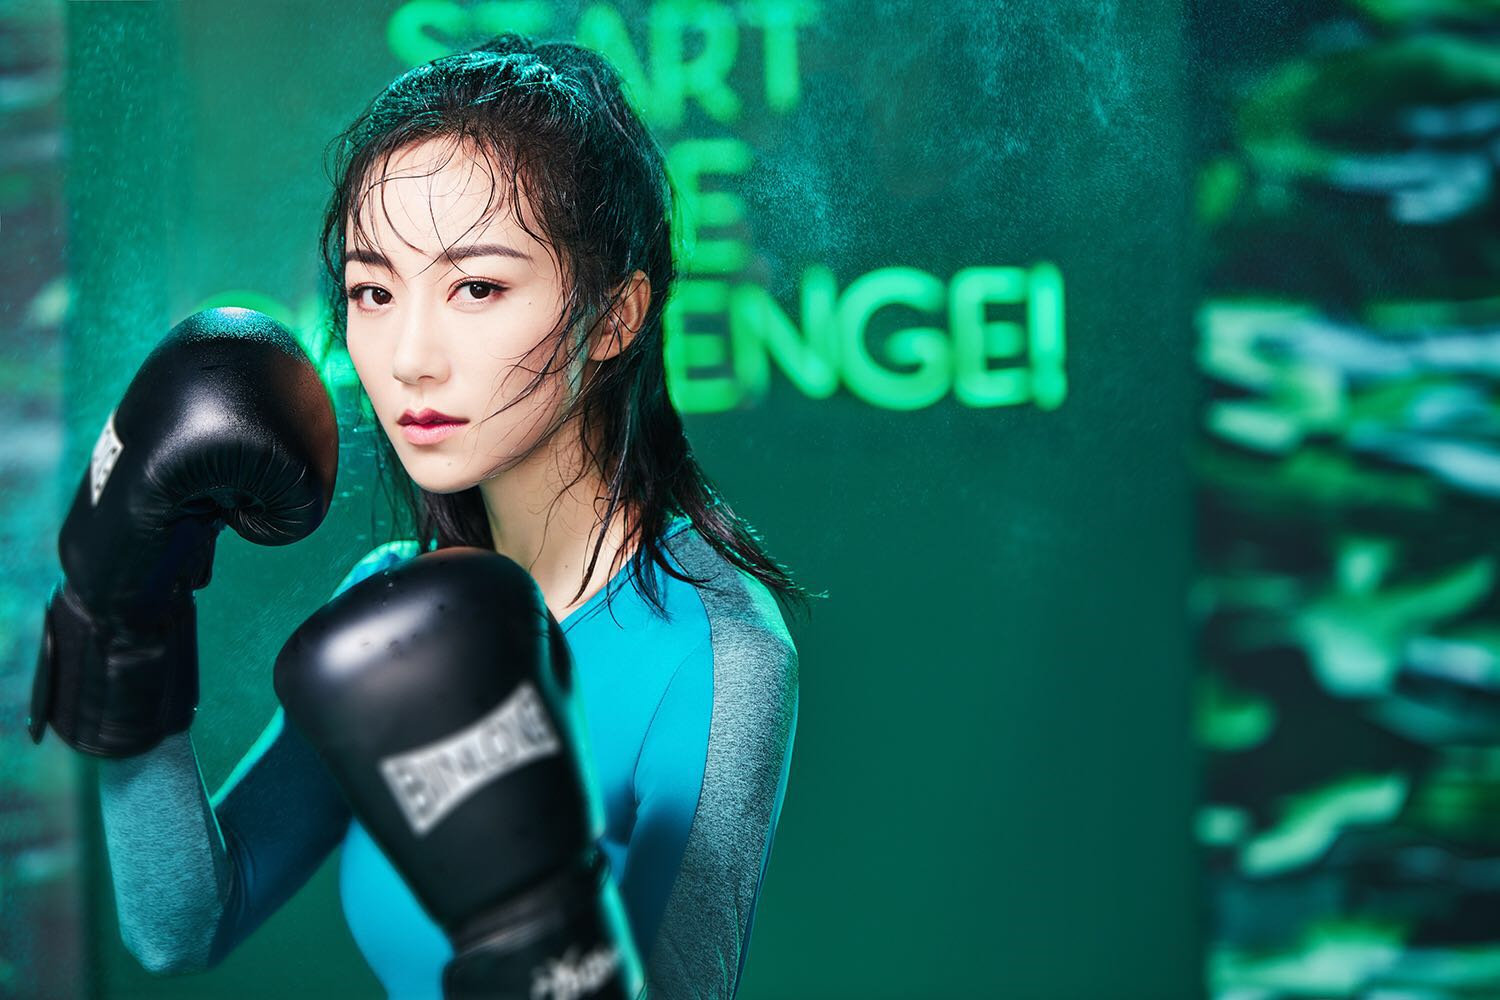 韩雪化身顶级护肤品牌大使 运动风宣传照尽显活力